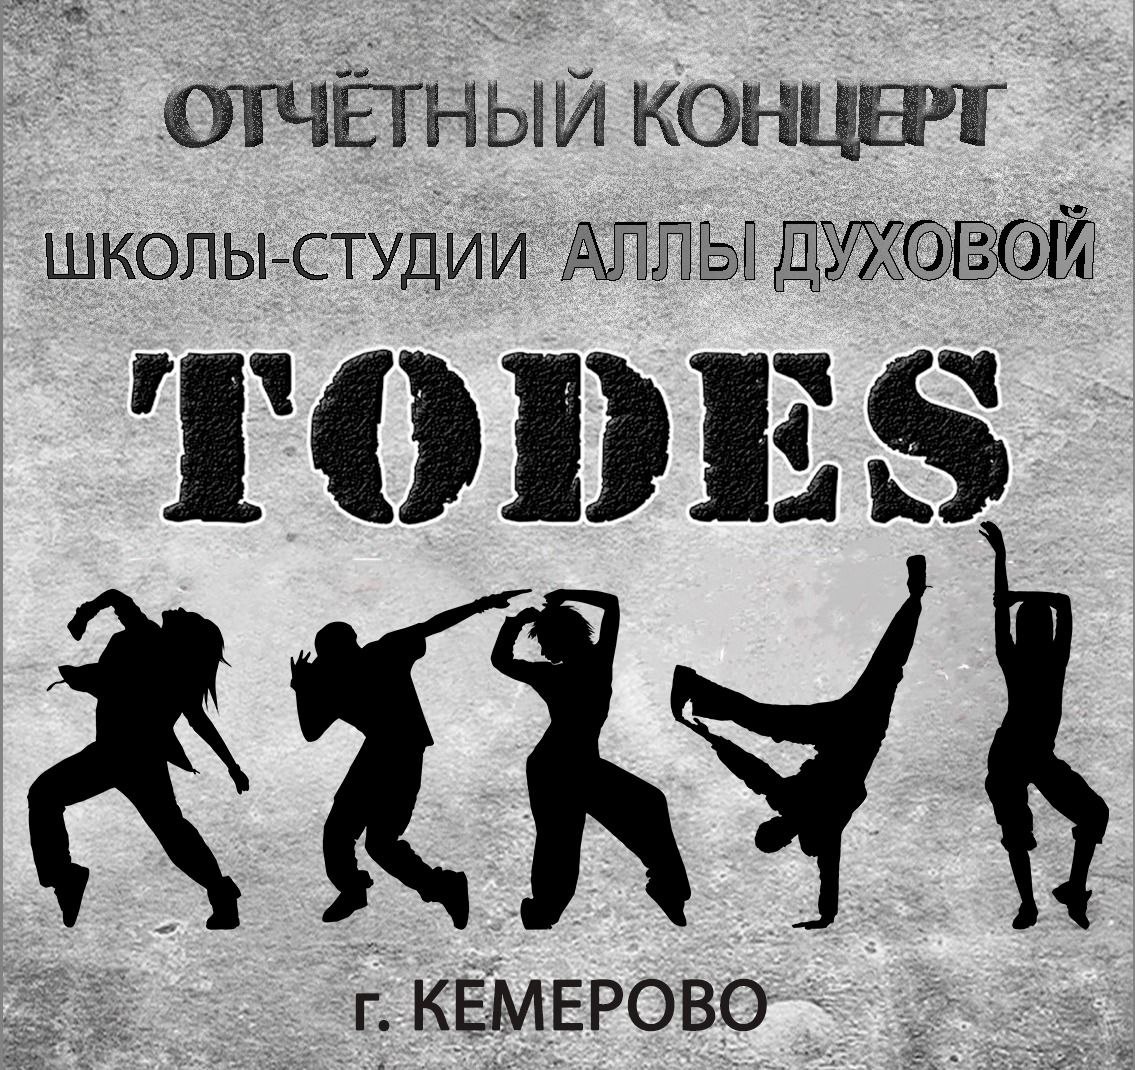 Отчетный концерт «Школы-студии Аллы Духовой Todes Кемерово»